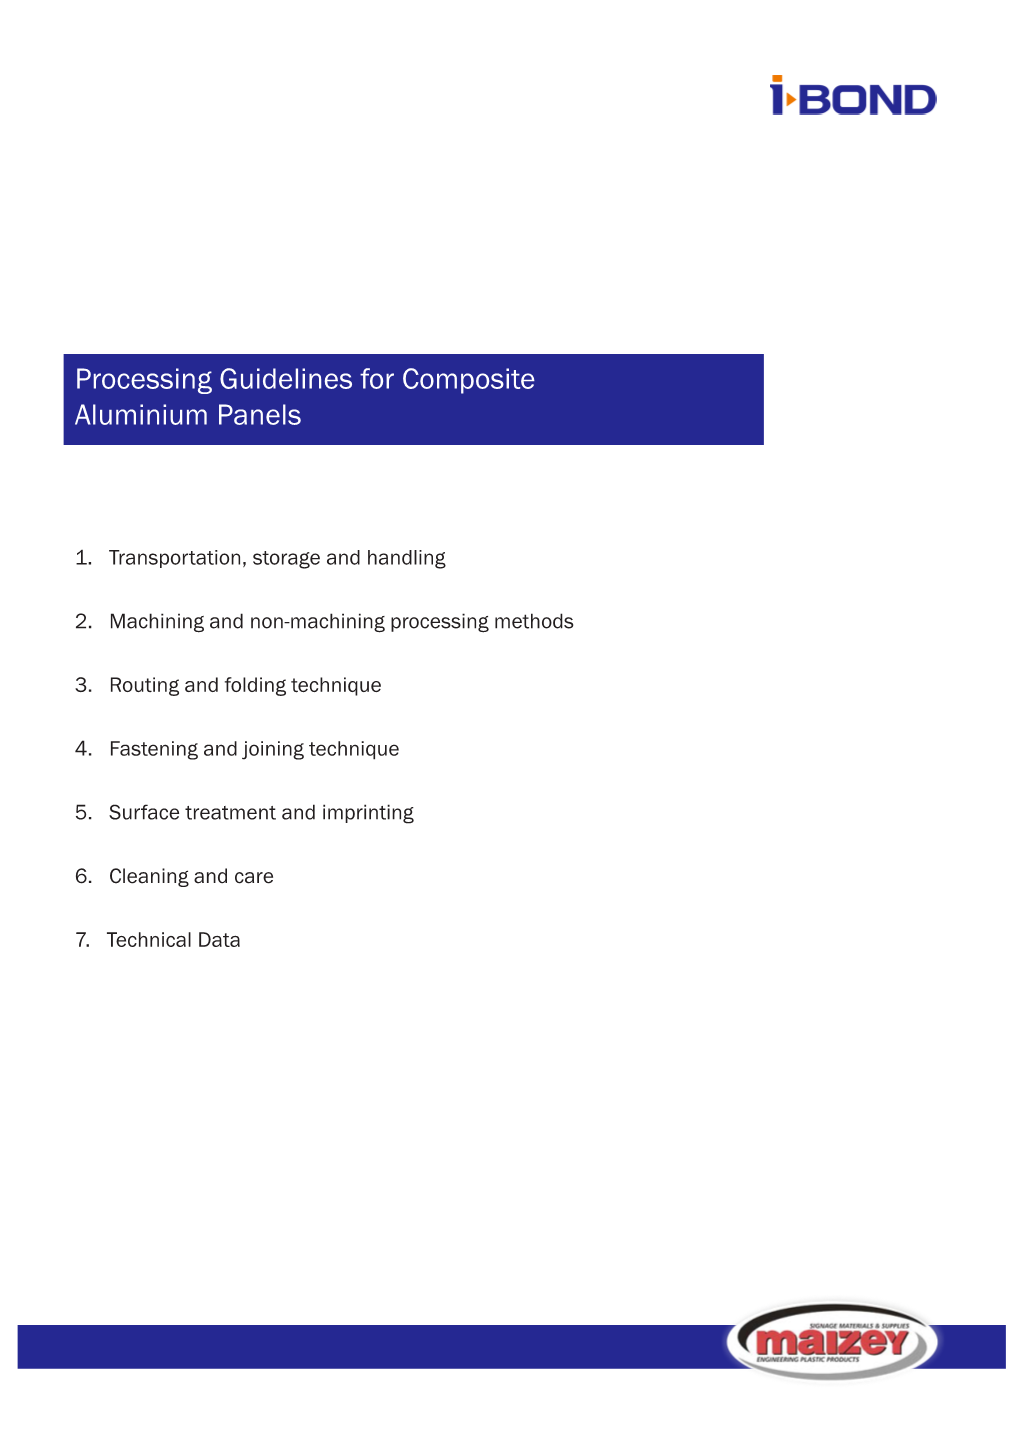 Processing Guidelines for Composite Aluminium Panels